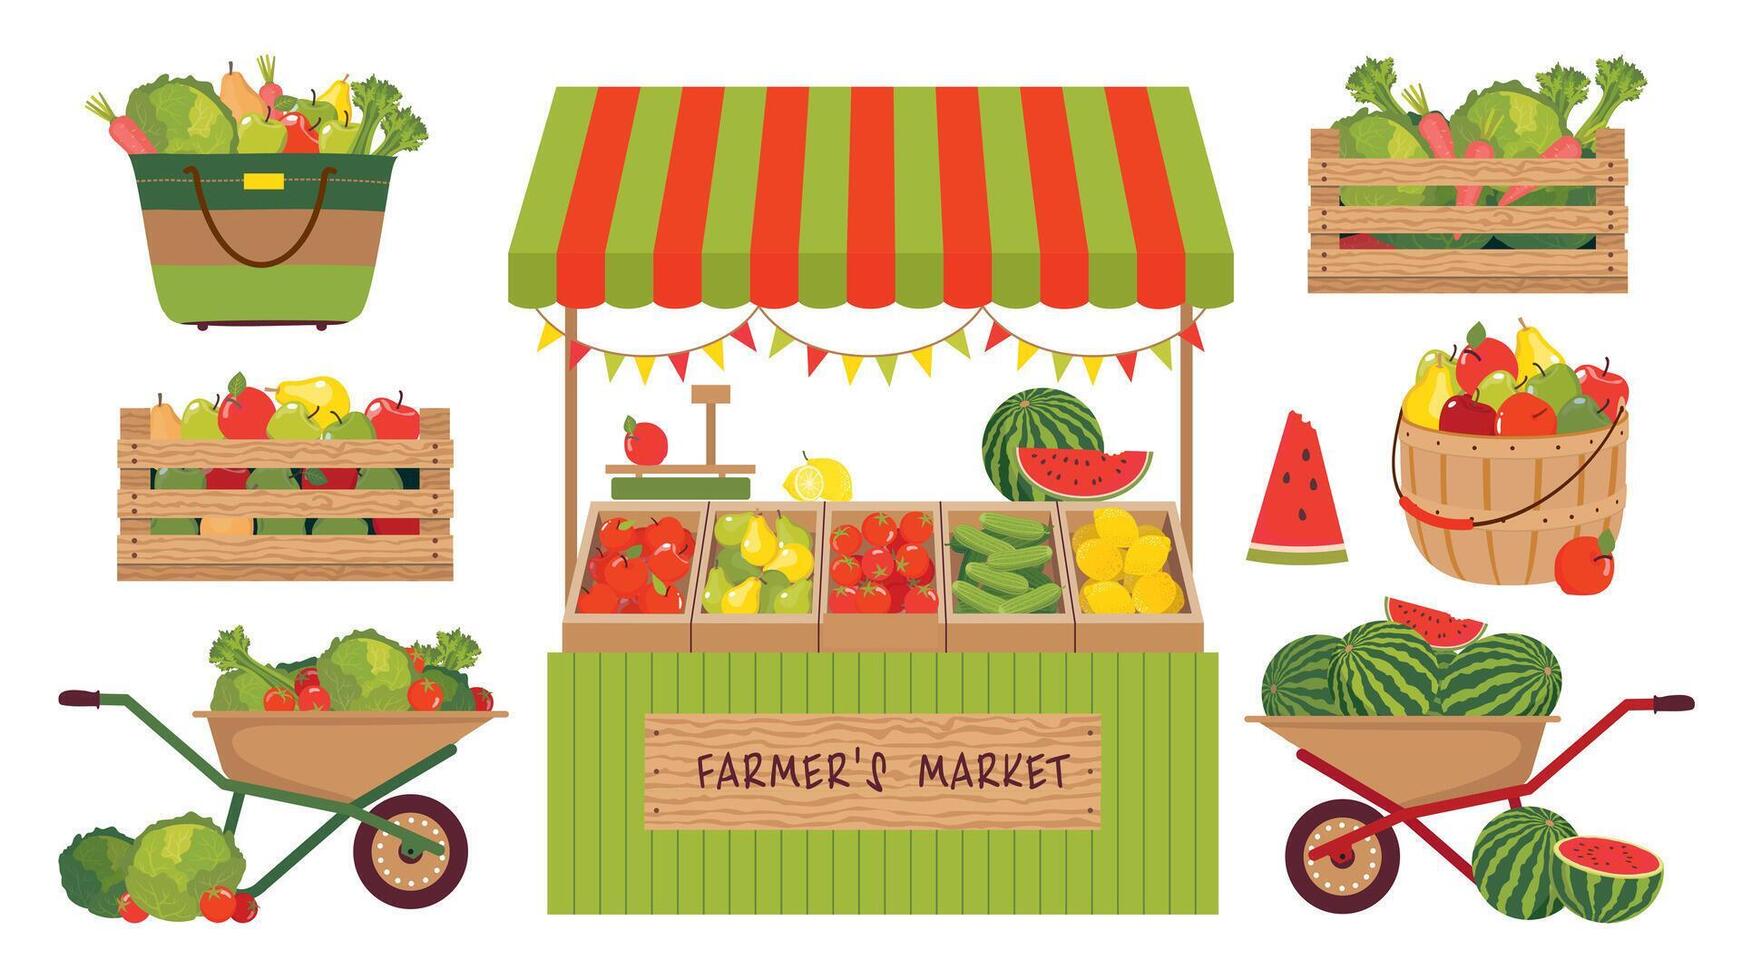 een reeks van illustraties van boerderij groenten, fruit en een boodschappen doen kraam. een boerderij kar met lokaal voedsel. watermeloenen, appels, citroenen in de boer markt. vector clip art.